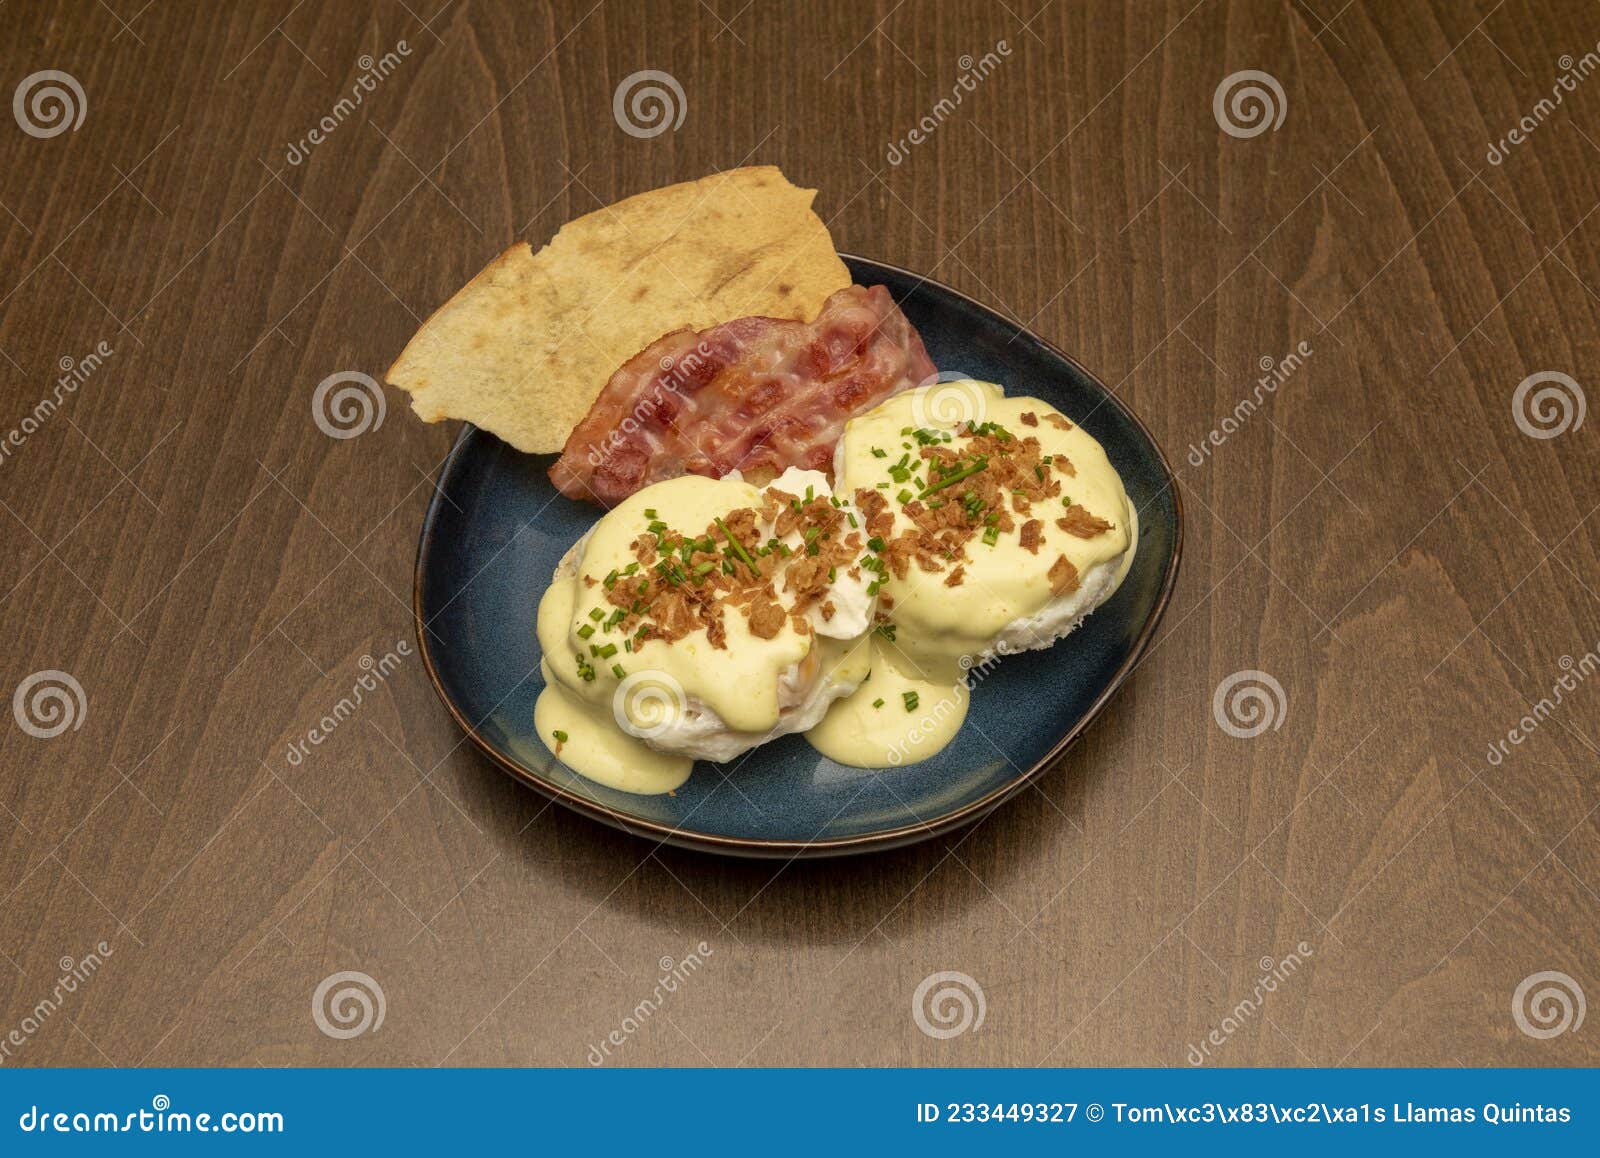 Café da manhã inglês no prato branco ovos com gema líquida